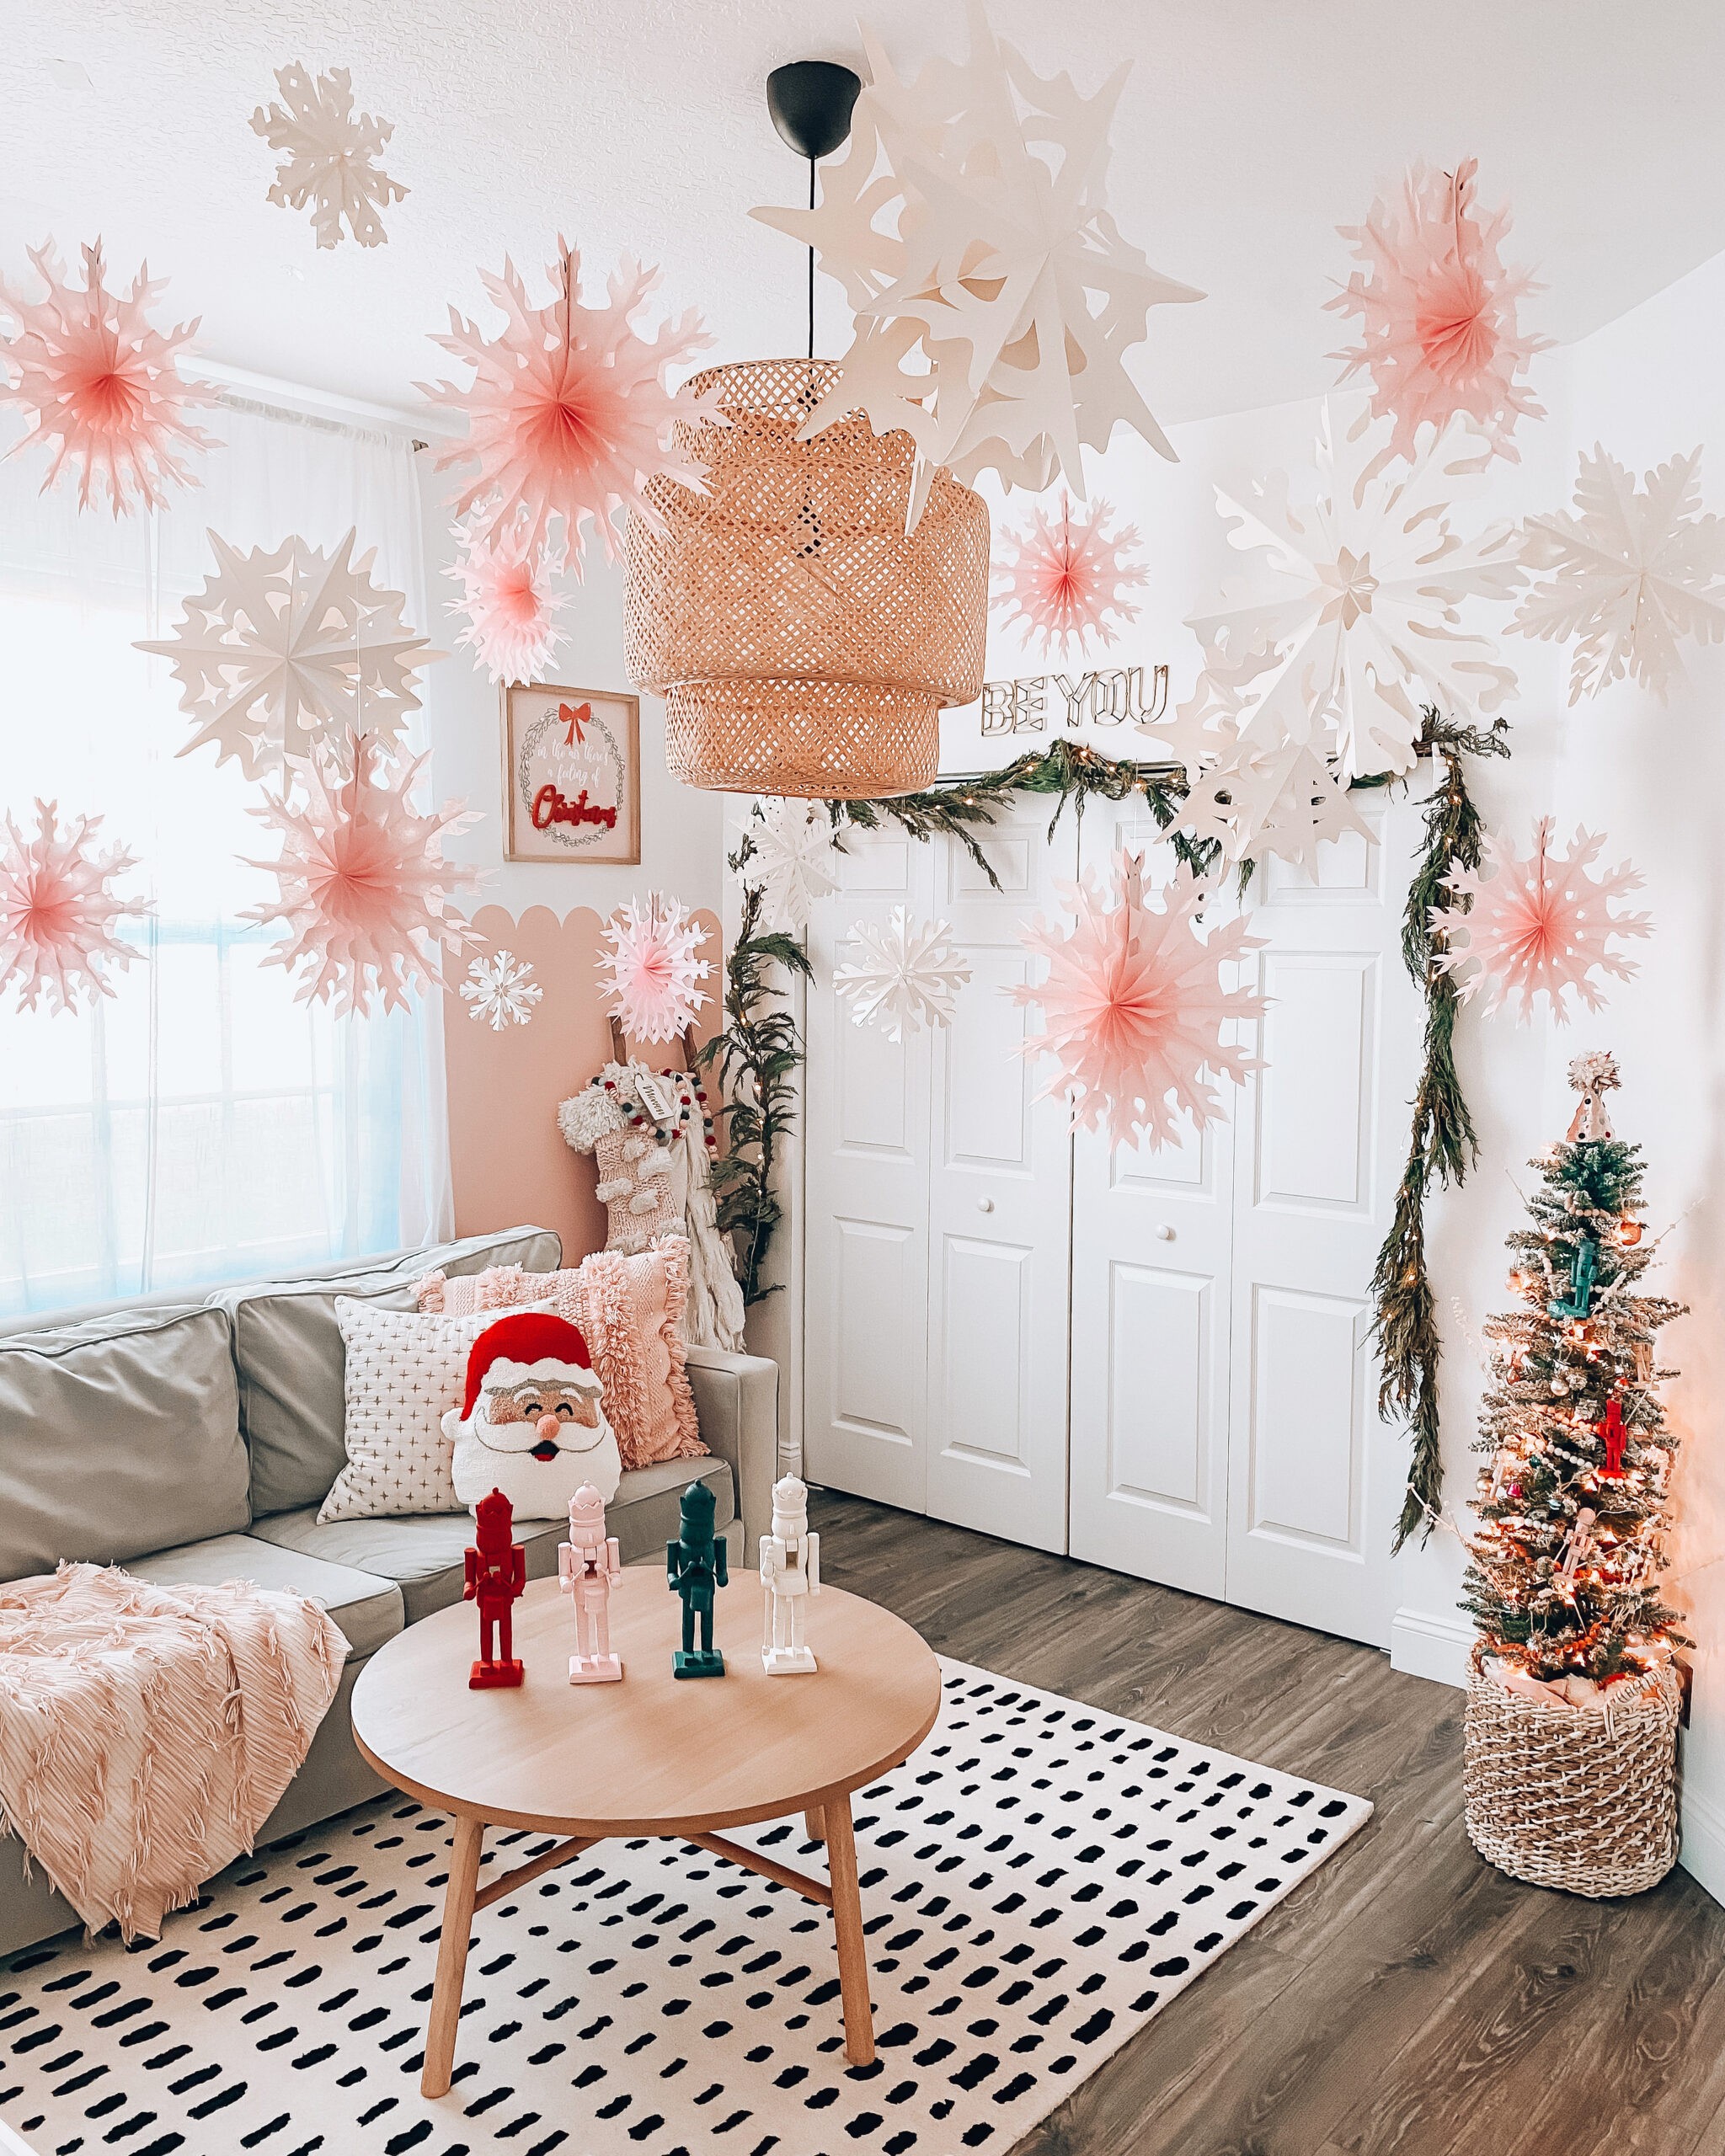 Christmas Home Decor Inspiration - Stephanie Hanna Blog